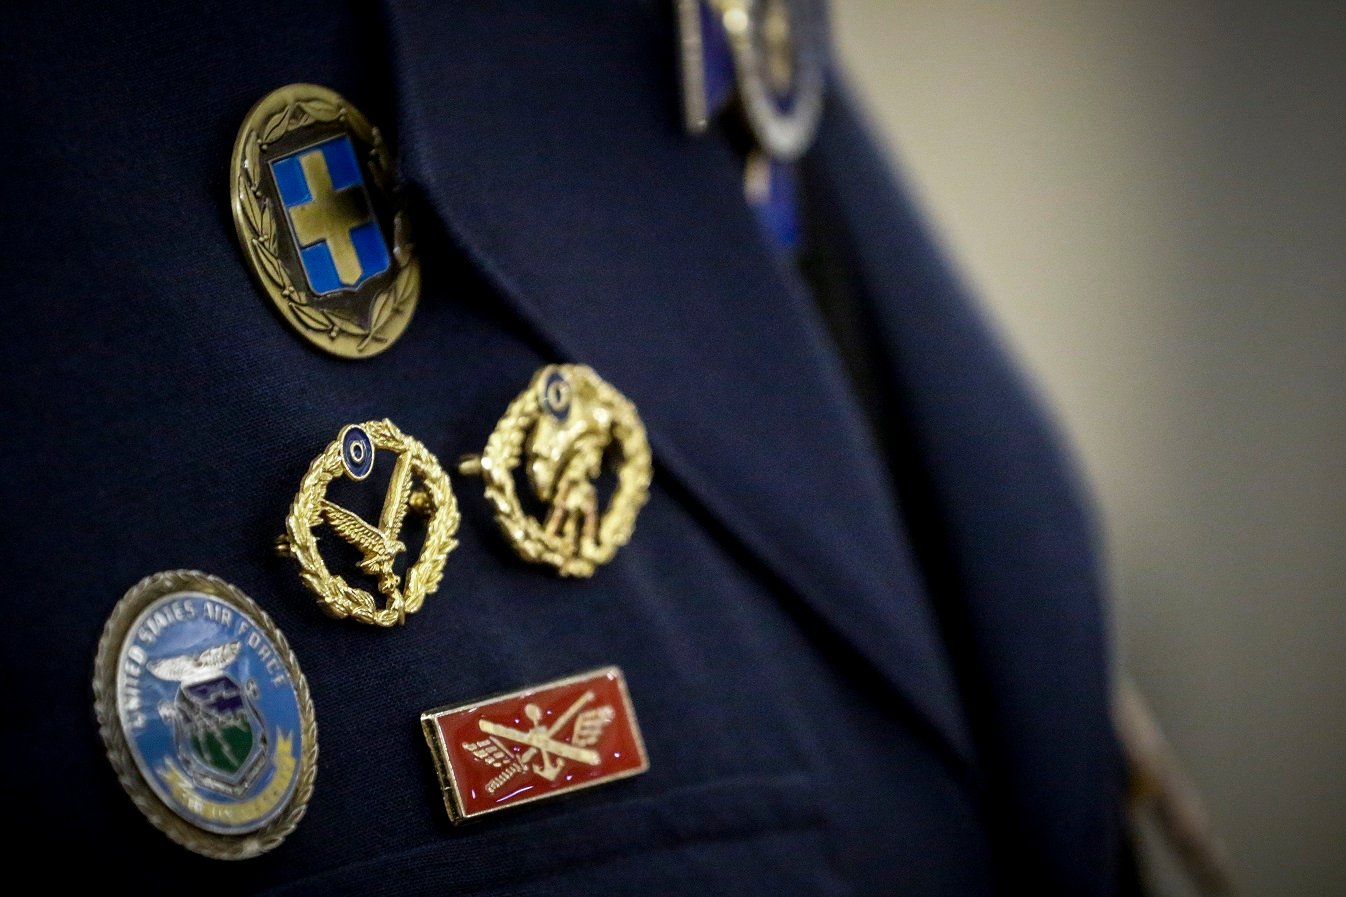 Ηλεία: Αξιωματικός της Πολεμικής Αεροπορίας βρέθηκε νεκρός στο σπίτι του |  Έθνος